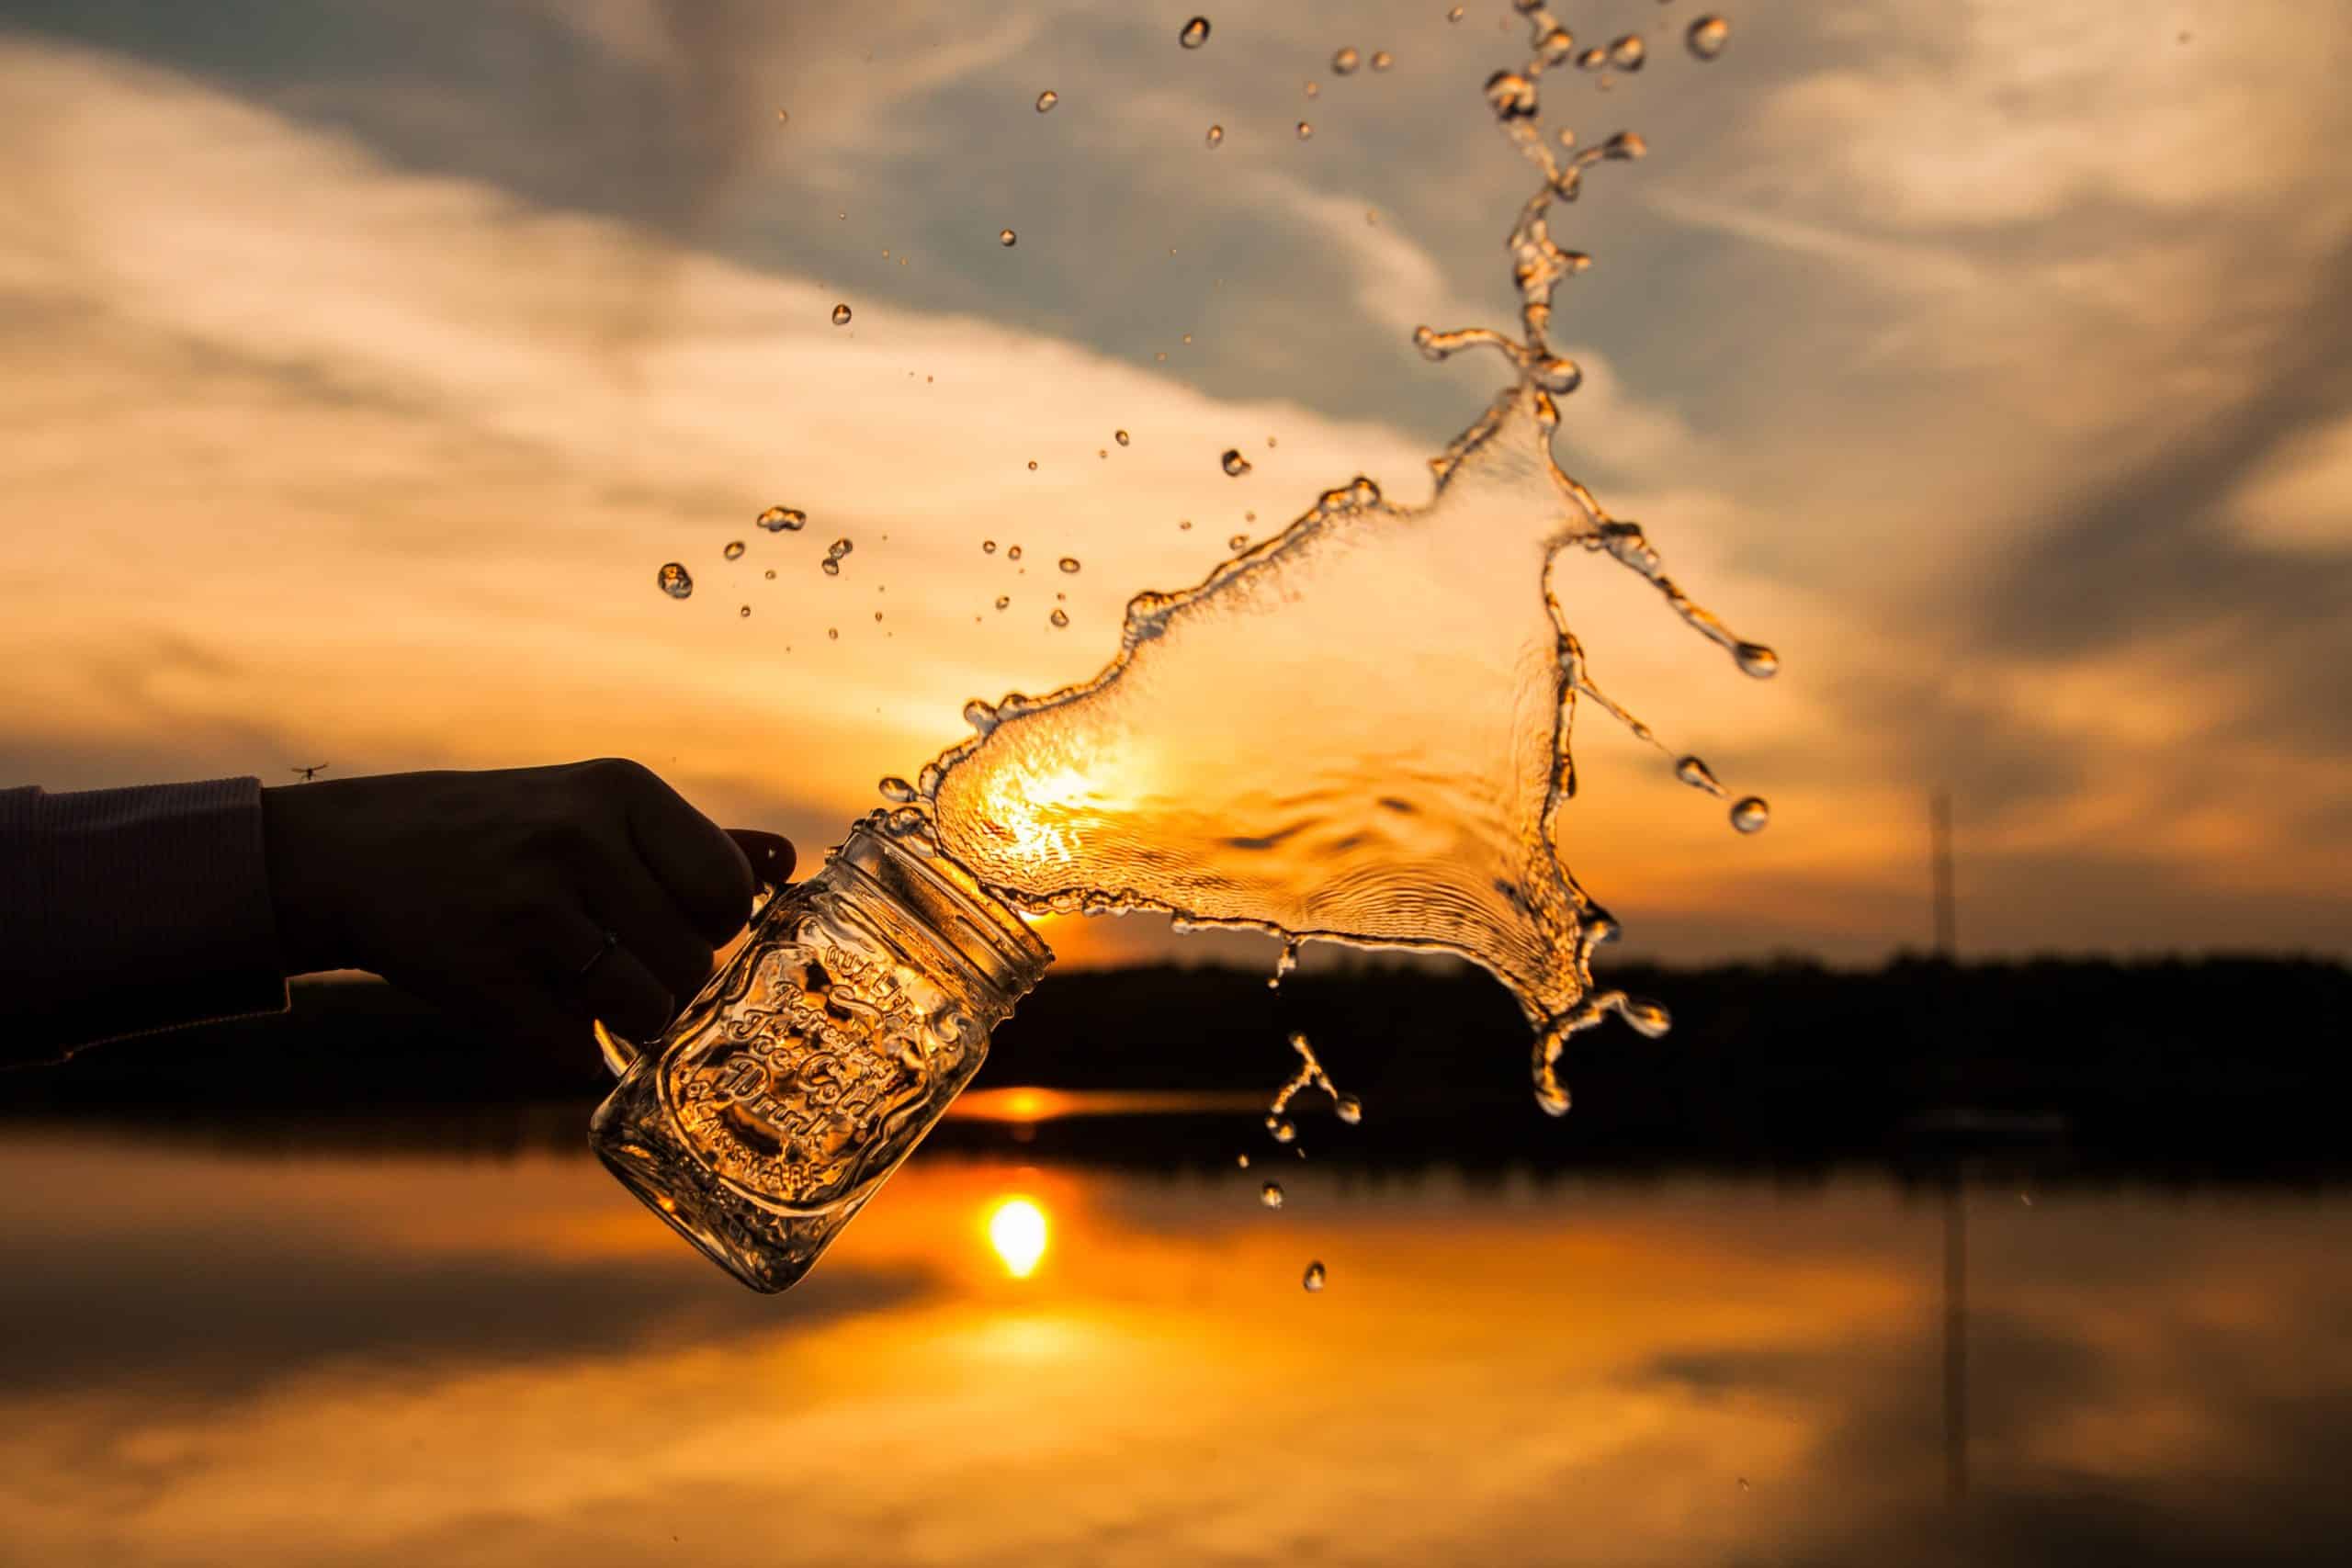 Una mano arrojando agua de un vaso.